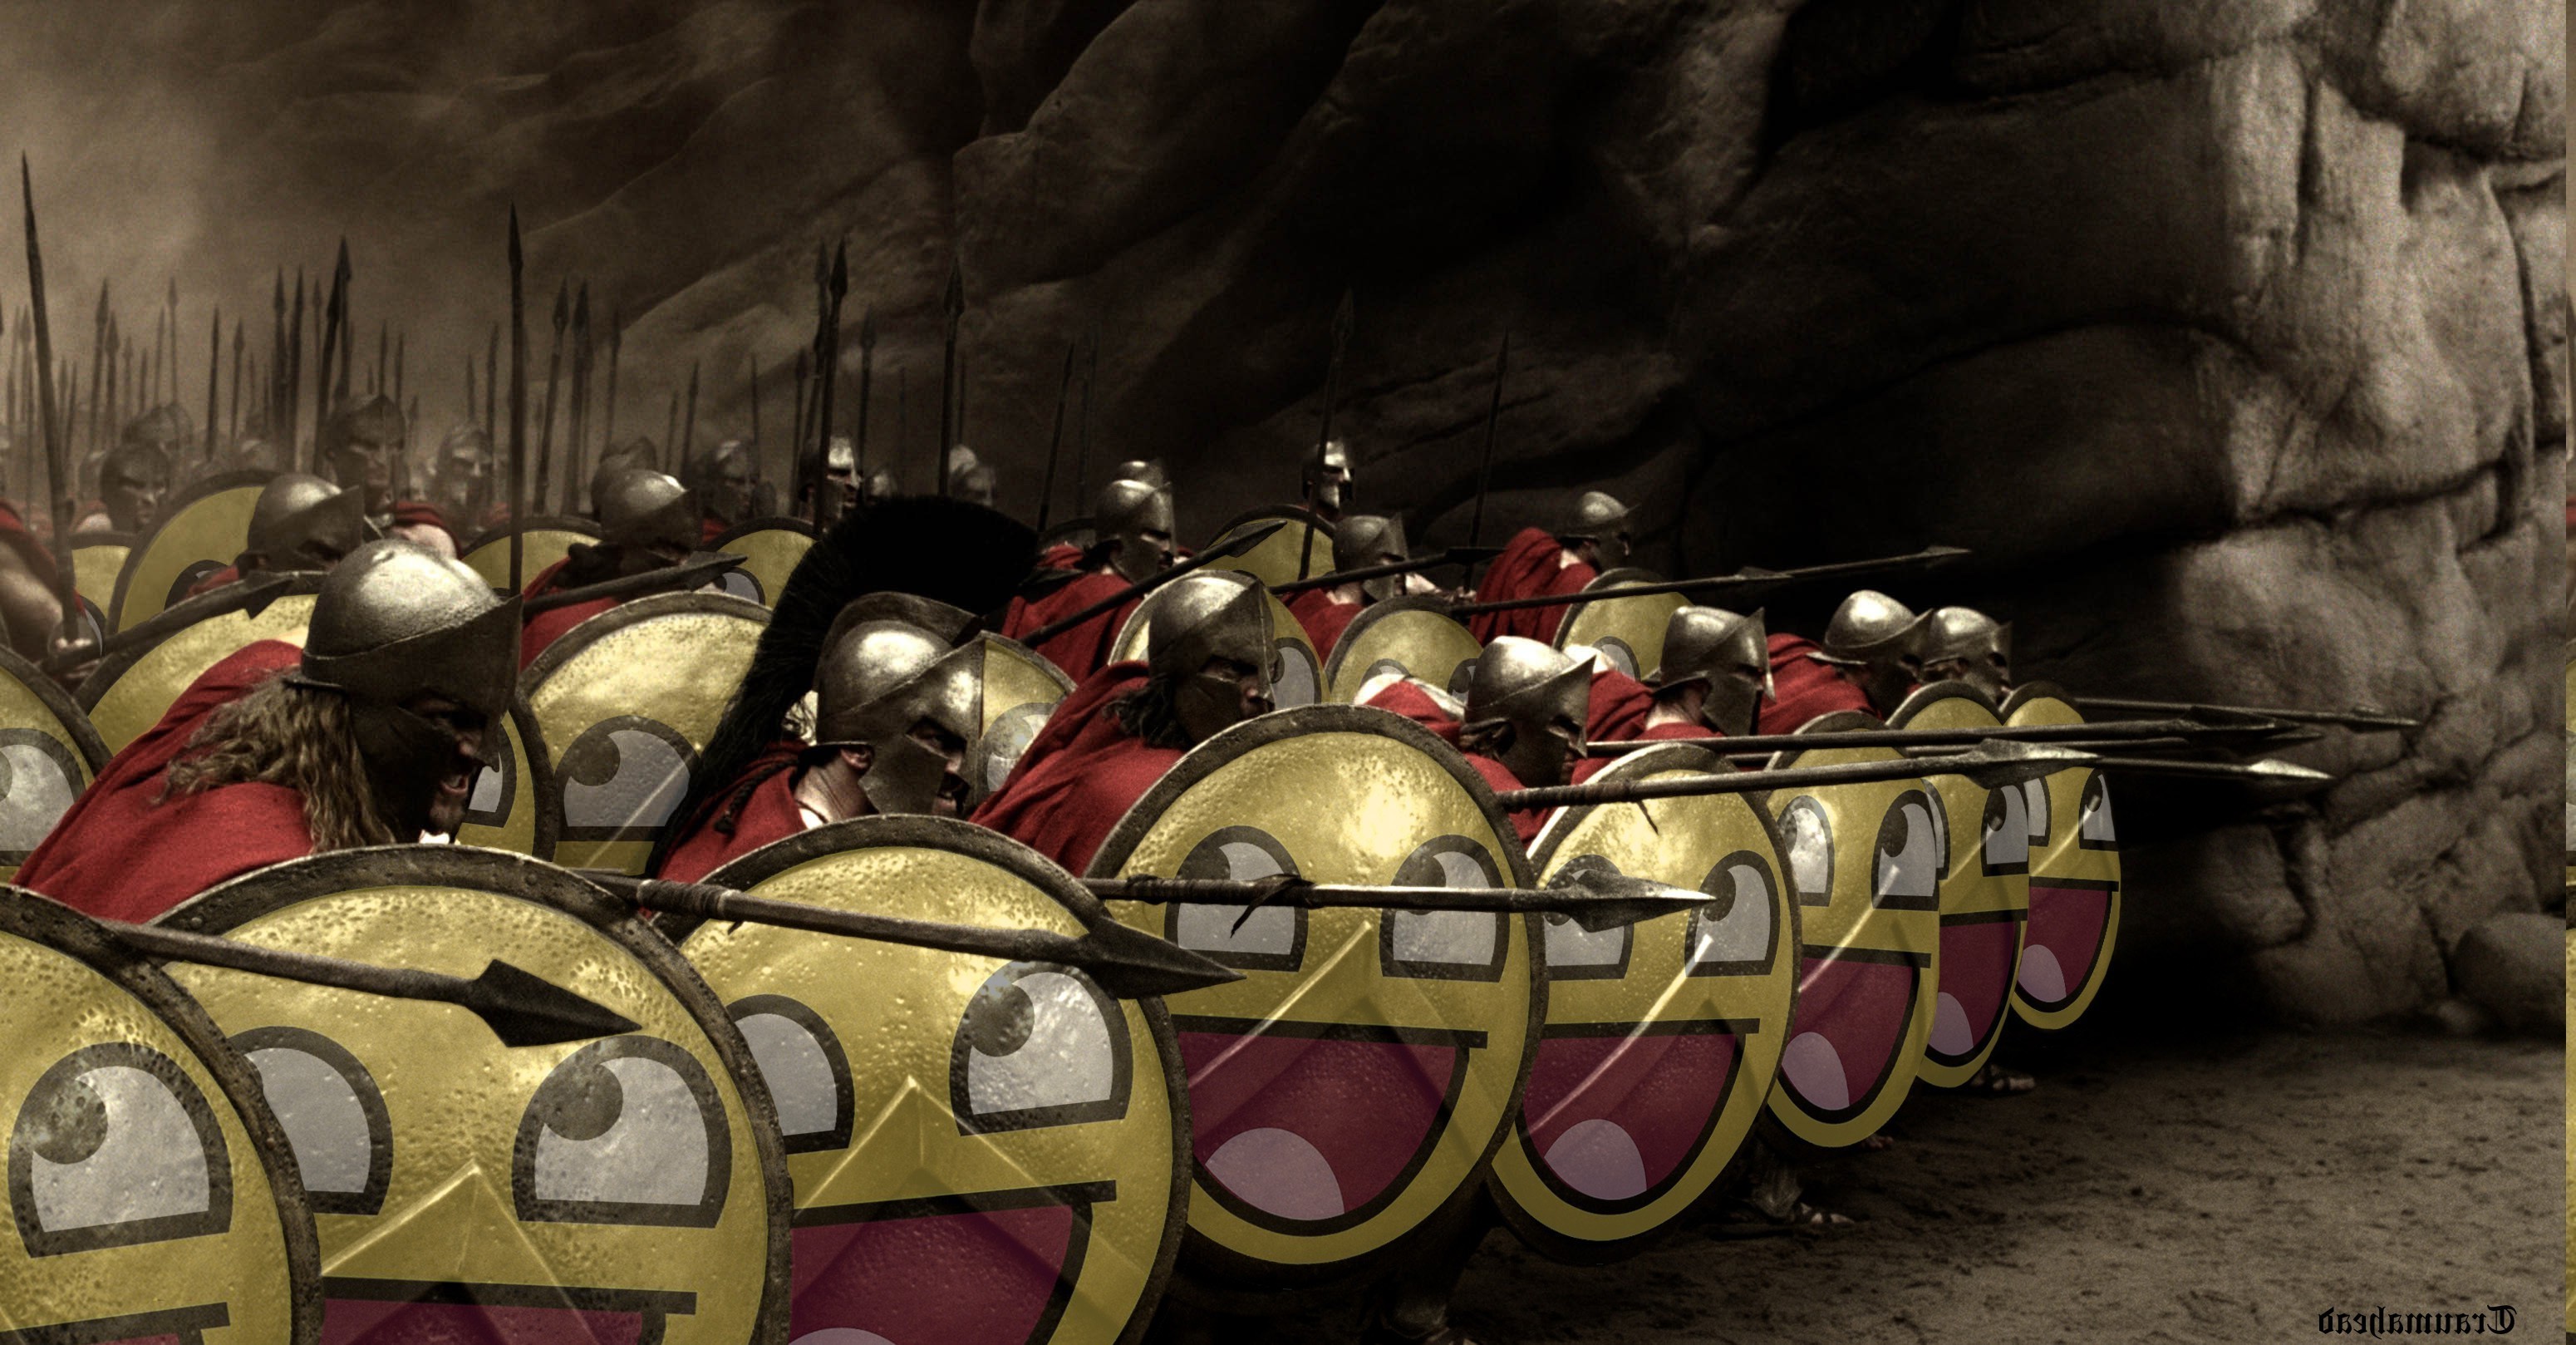 300 Spartans - HD Wallpaper 